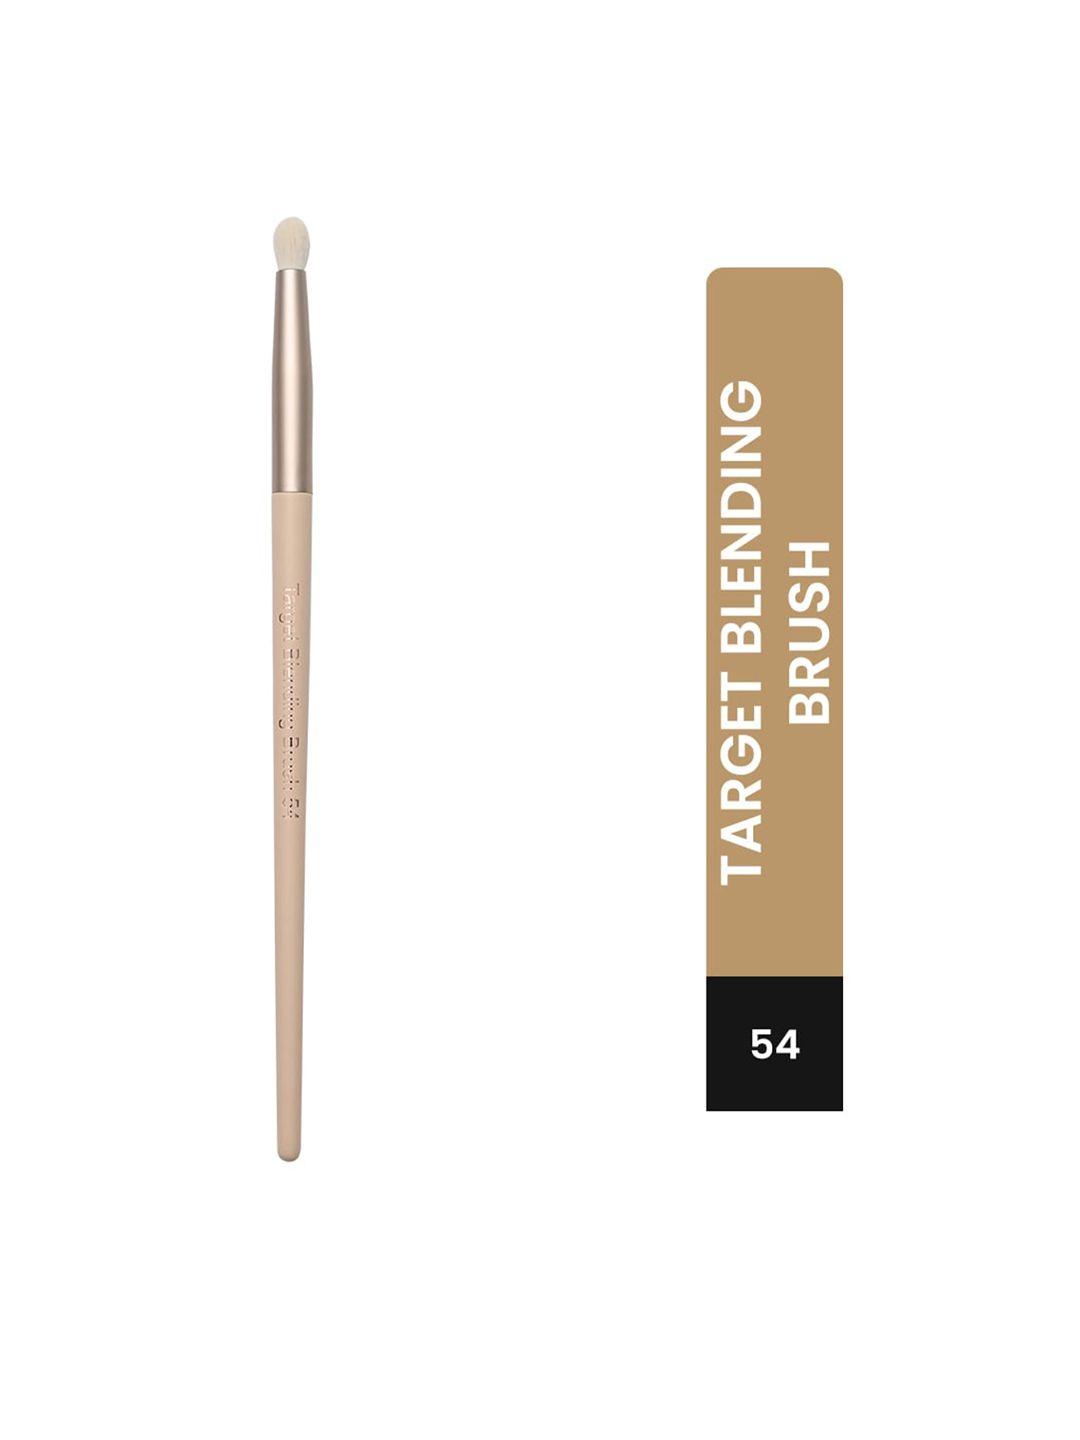 milagro beauty target blending brush - 54